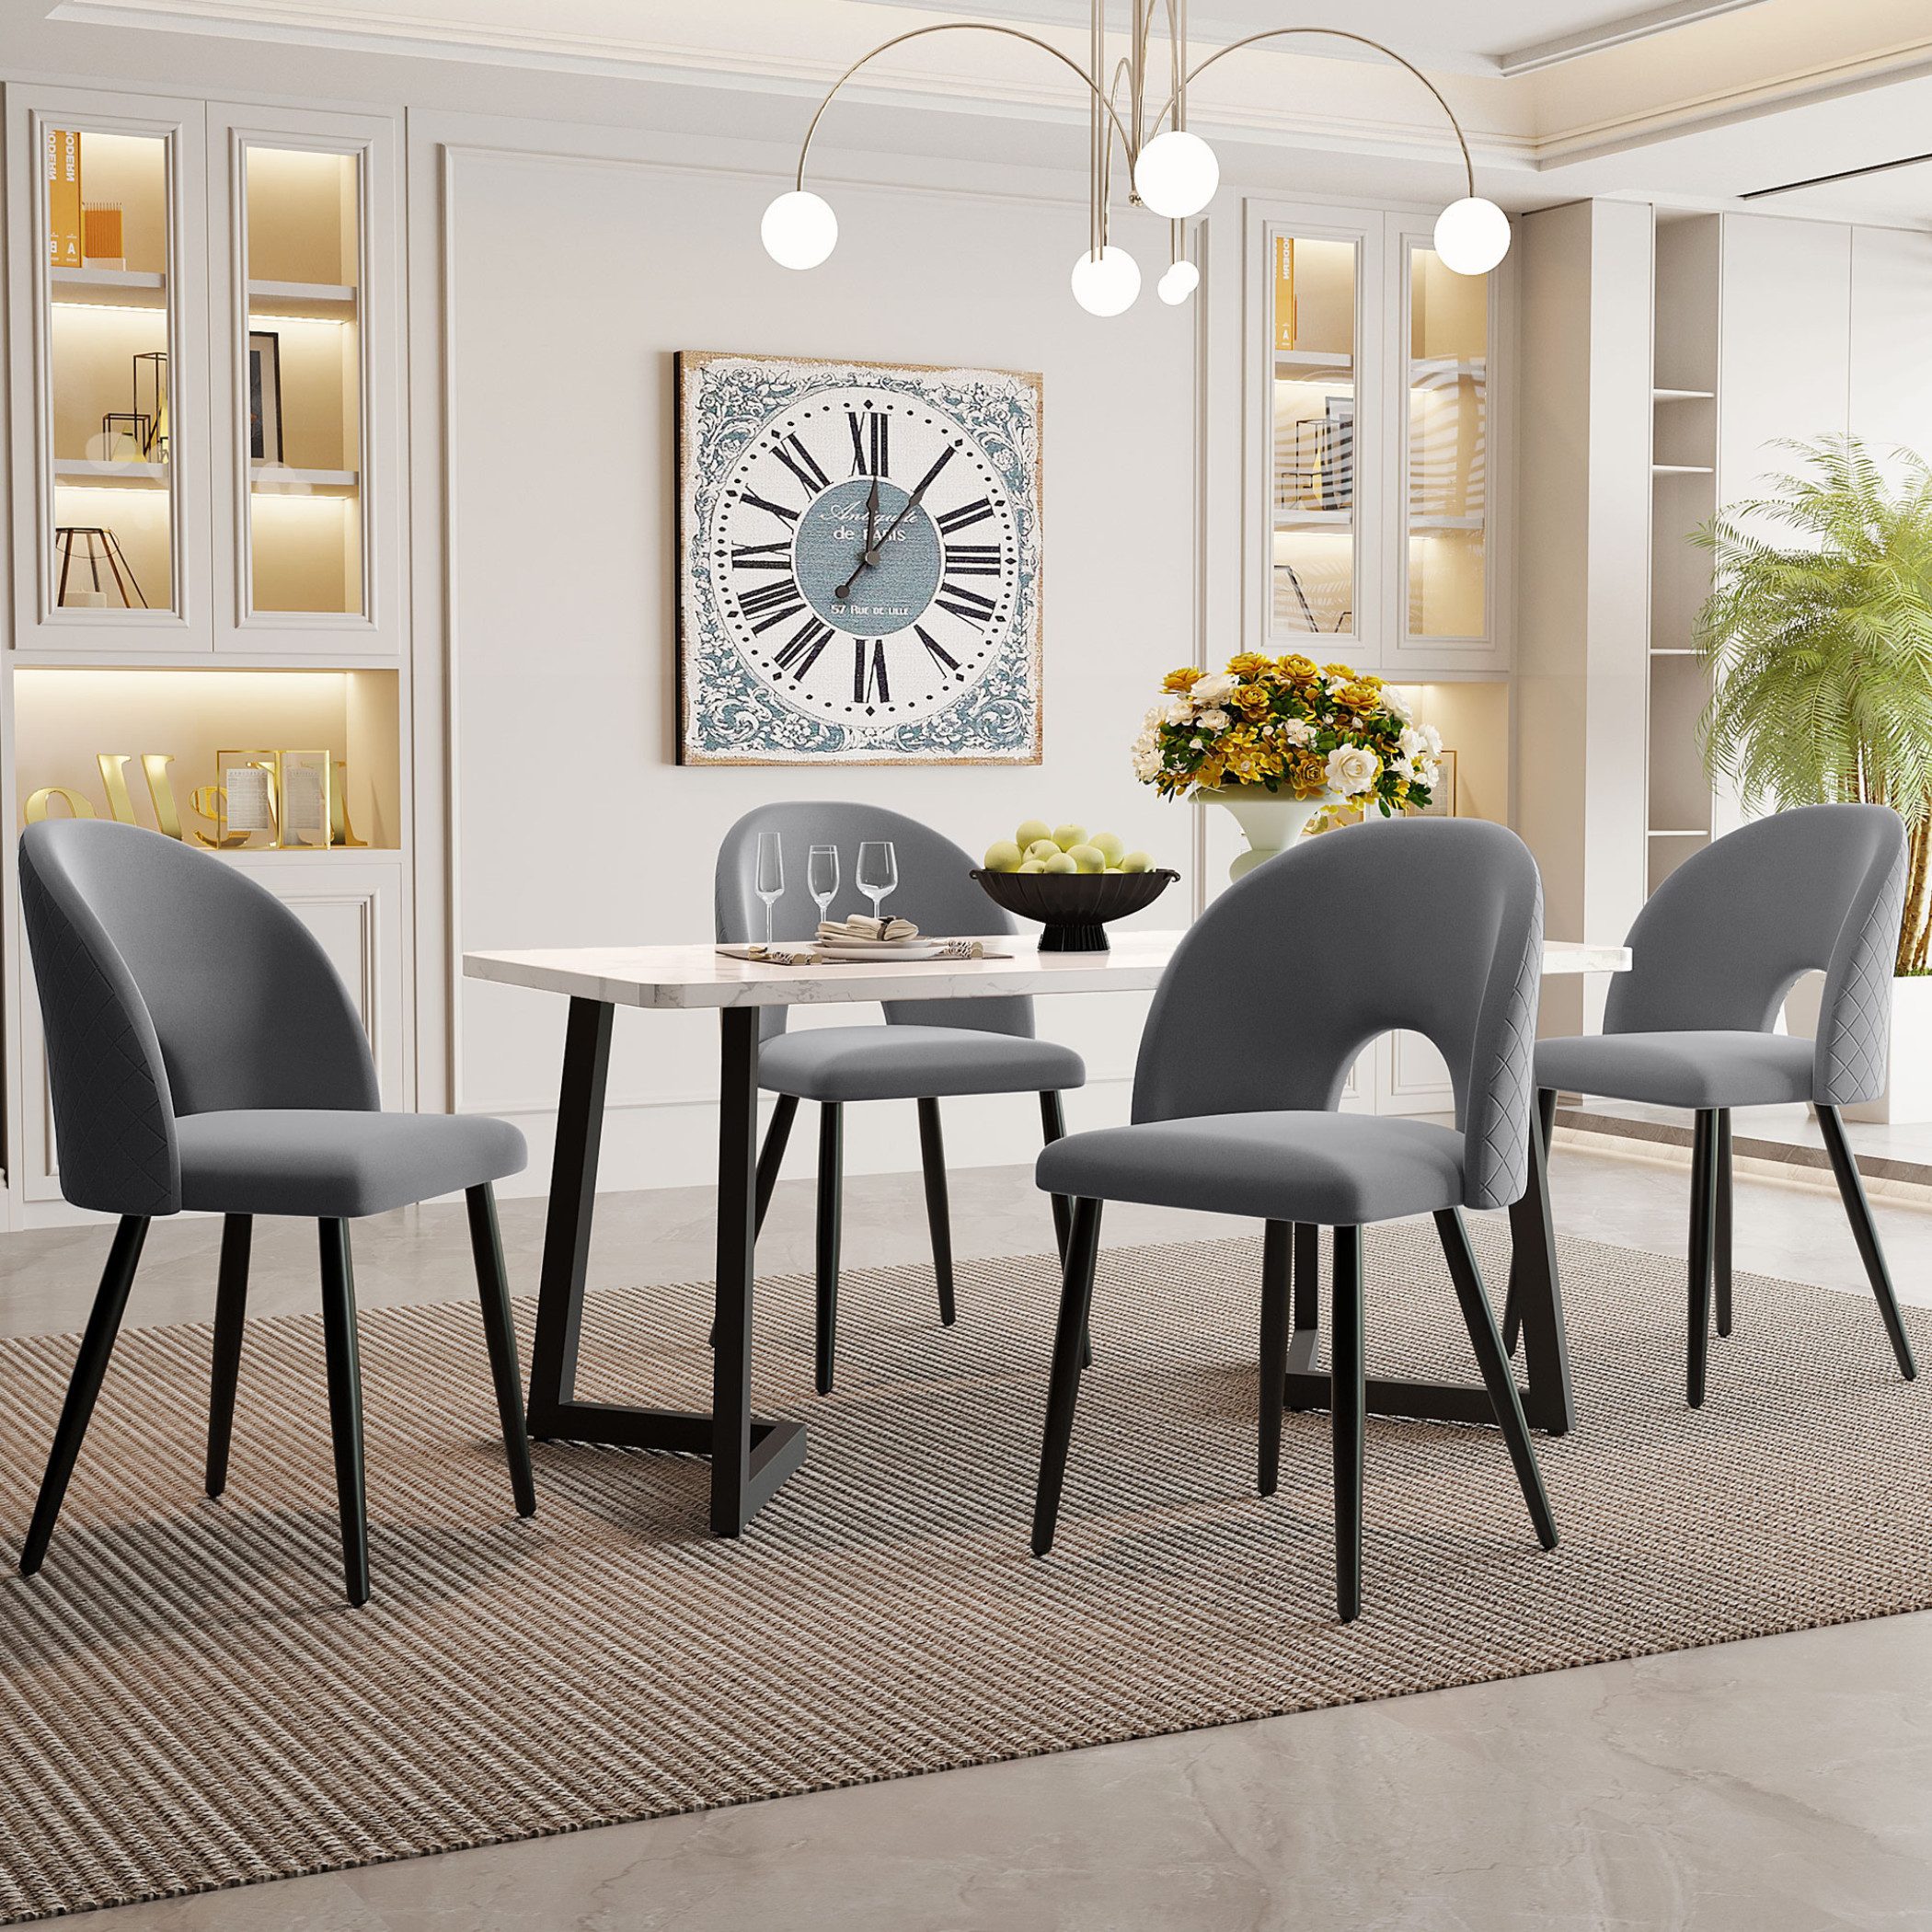 SeedWave Esszimmer-Set Sitzgarnitur für Wohnzimmer, Küche, Esstisch 117x68cm mit Stühlen Set, Ergonomisches Esstischset für 4